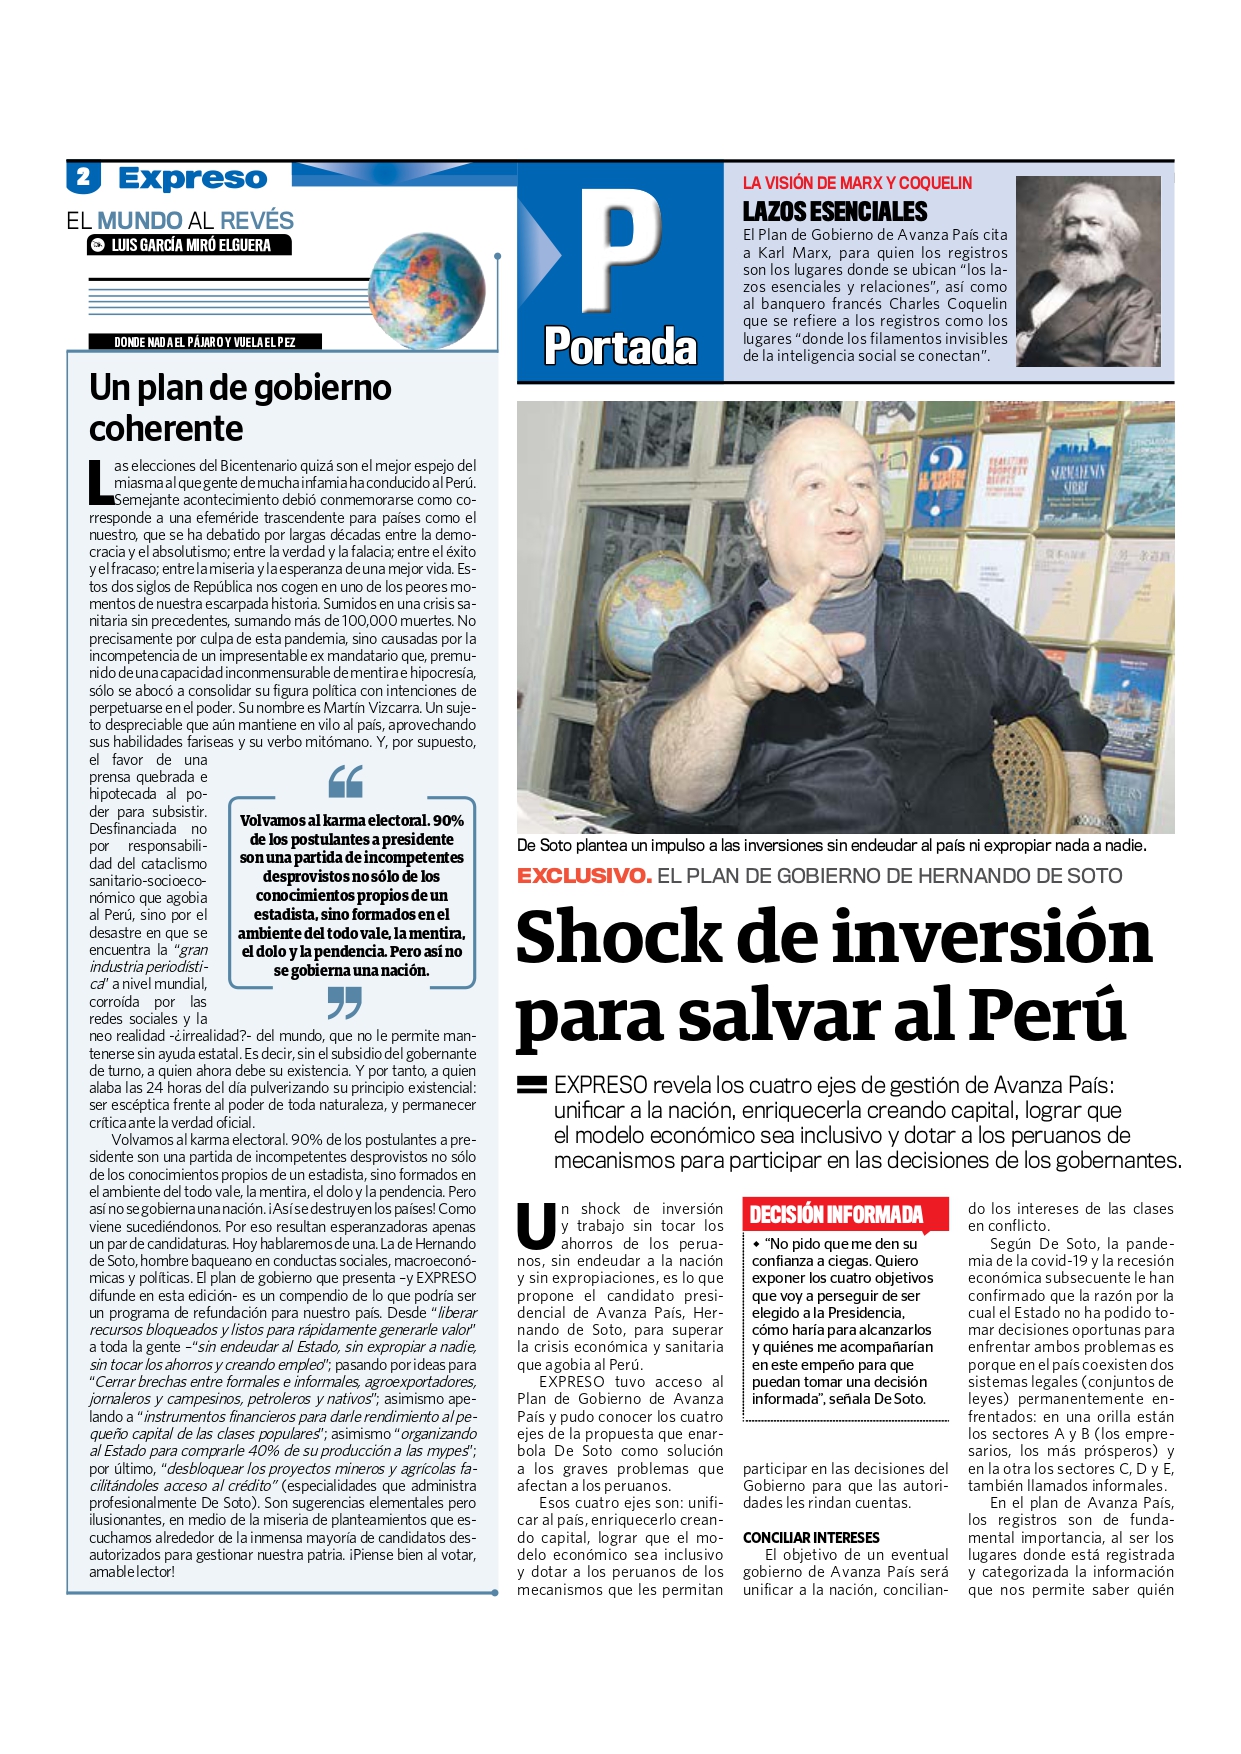 2021 02 11 EXPRESO Shock de inversión para salvar al Perú page 0001